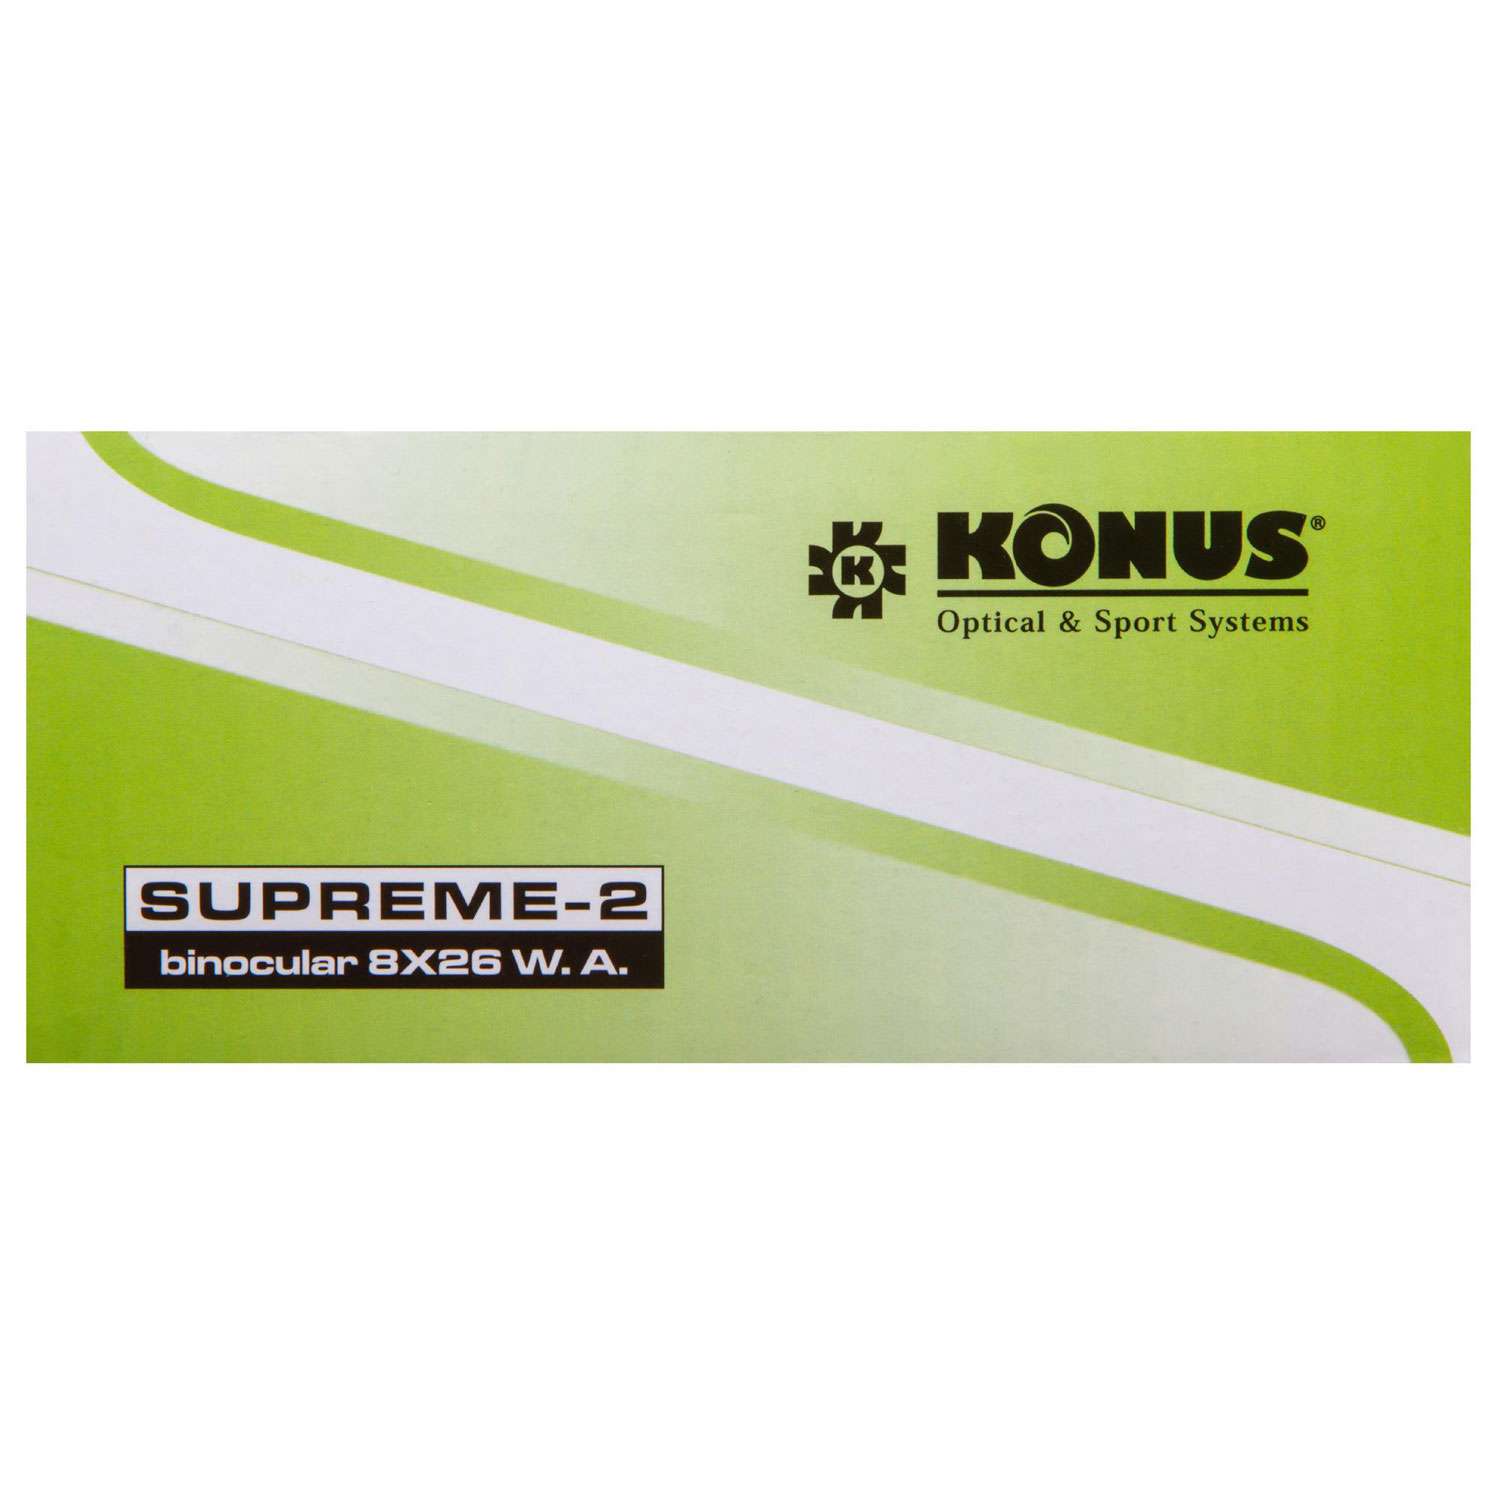 Бинокль Konus Supreme-2 8x26 WA - фото 16